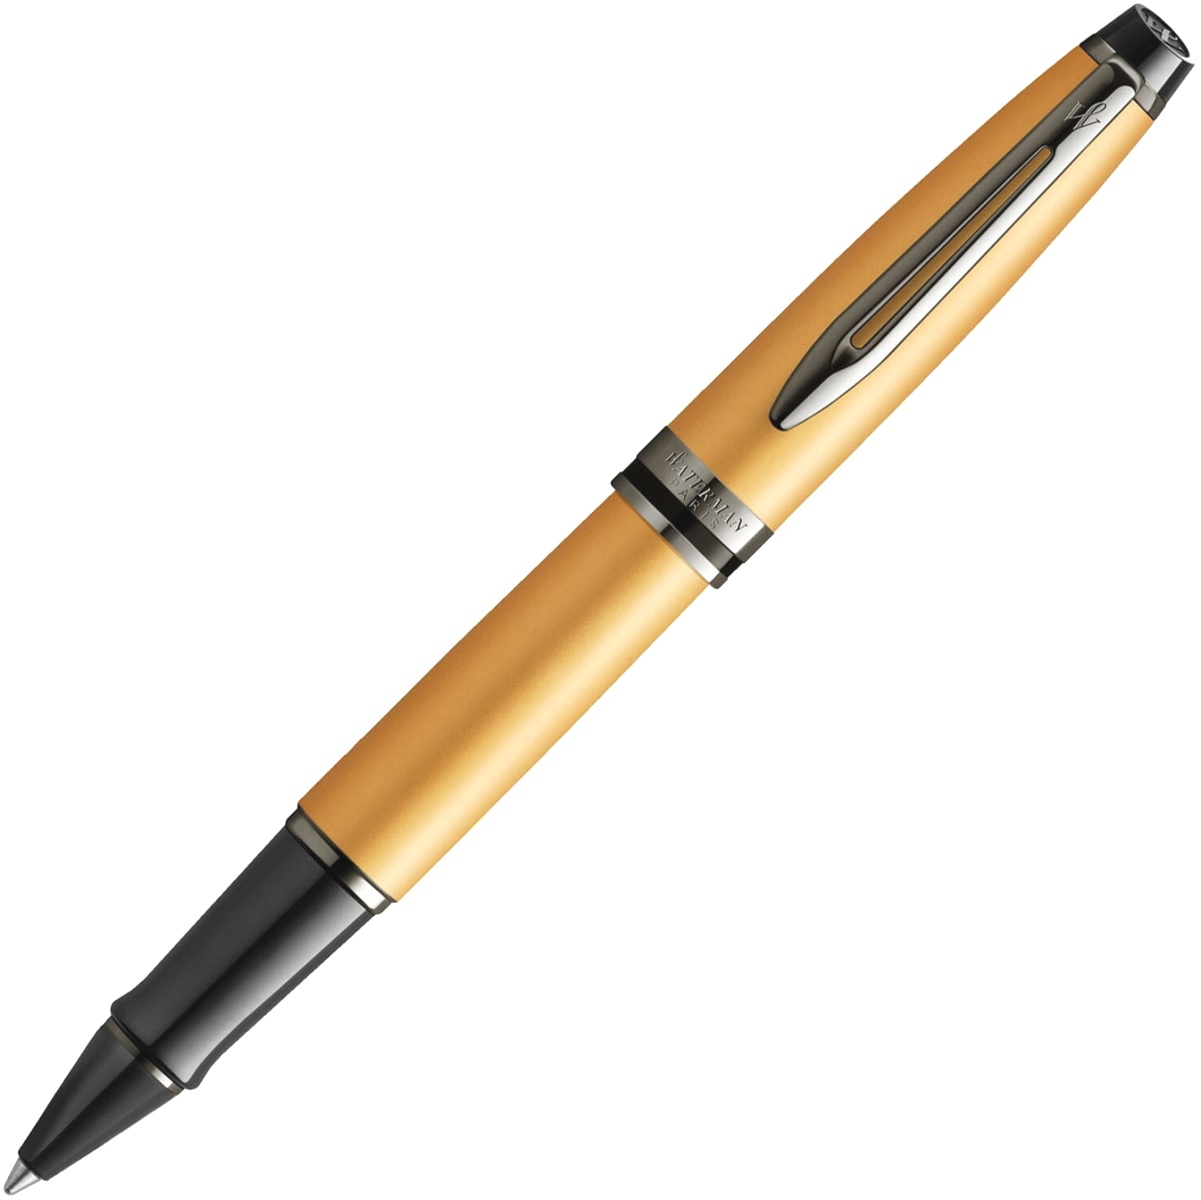  Ручка-роллер Waterman Expert DeLuxe, Metallic Gold RT